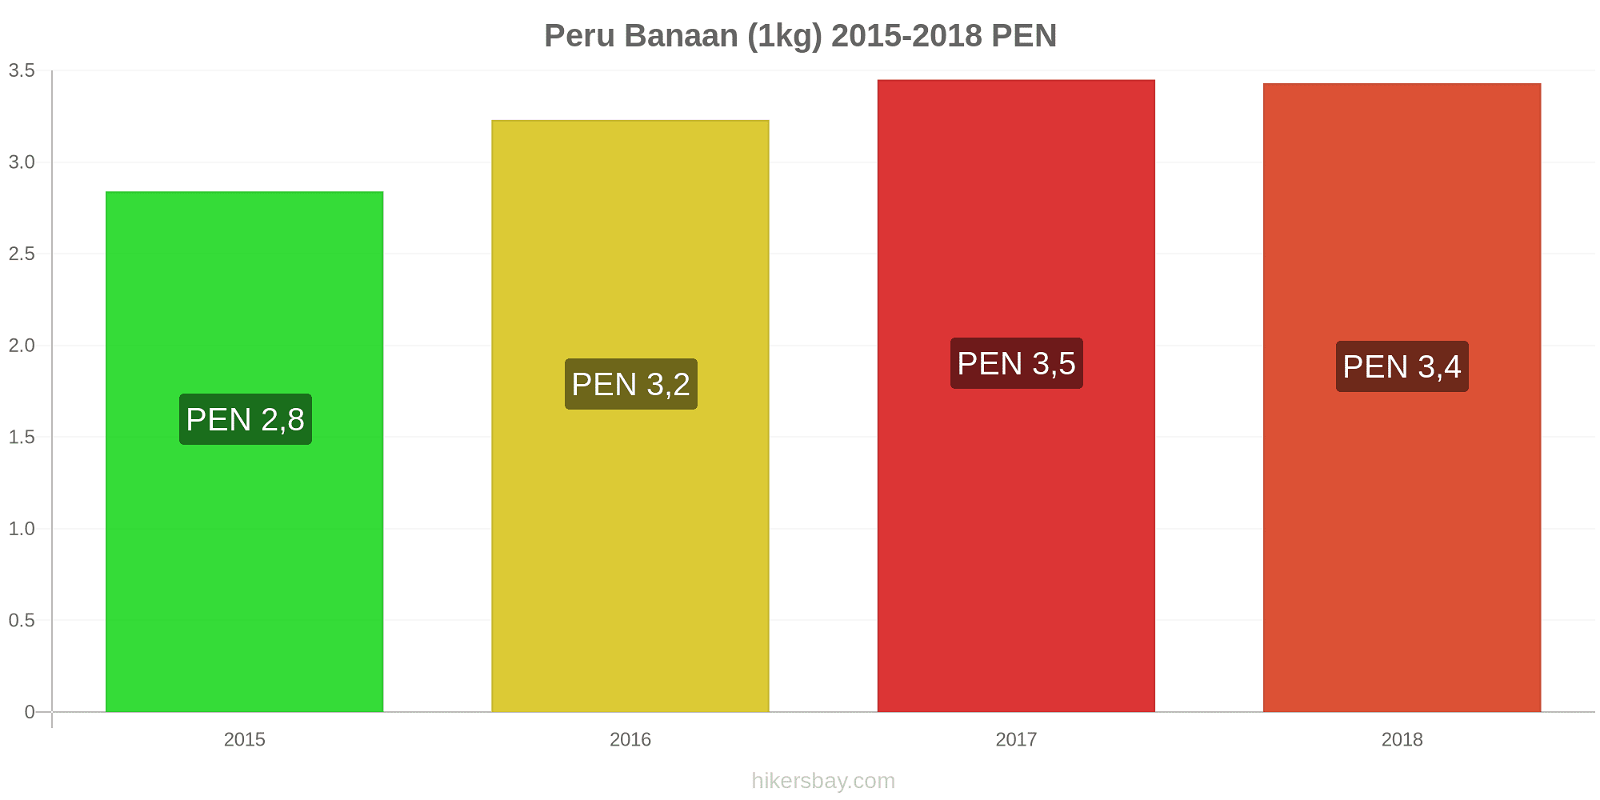 Peru prijswijzigingen Bananen (1kg) hikersbay.com